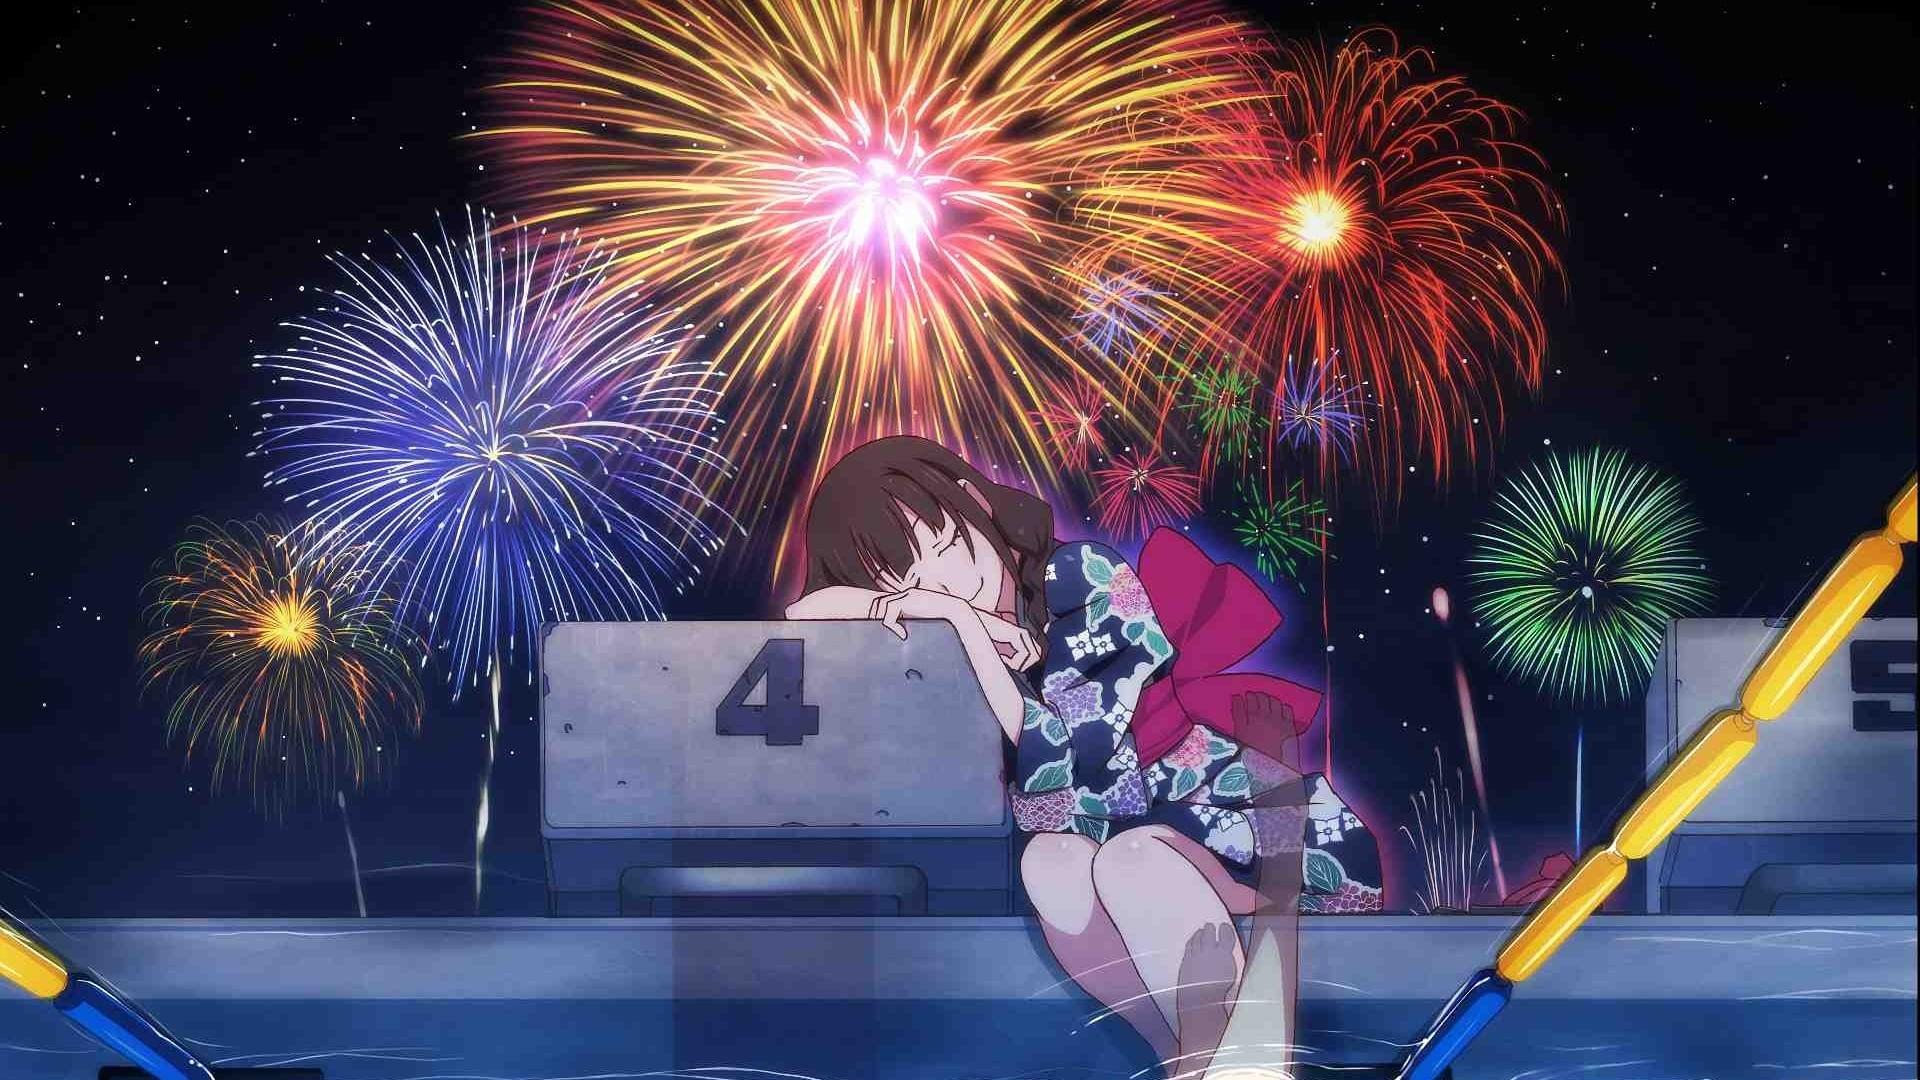 Fireworks backdrop